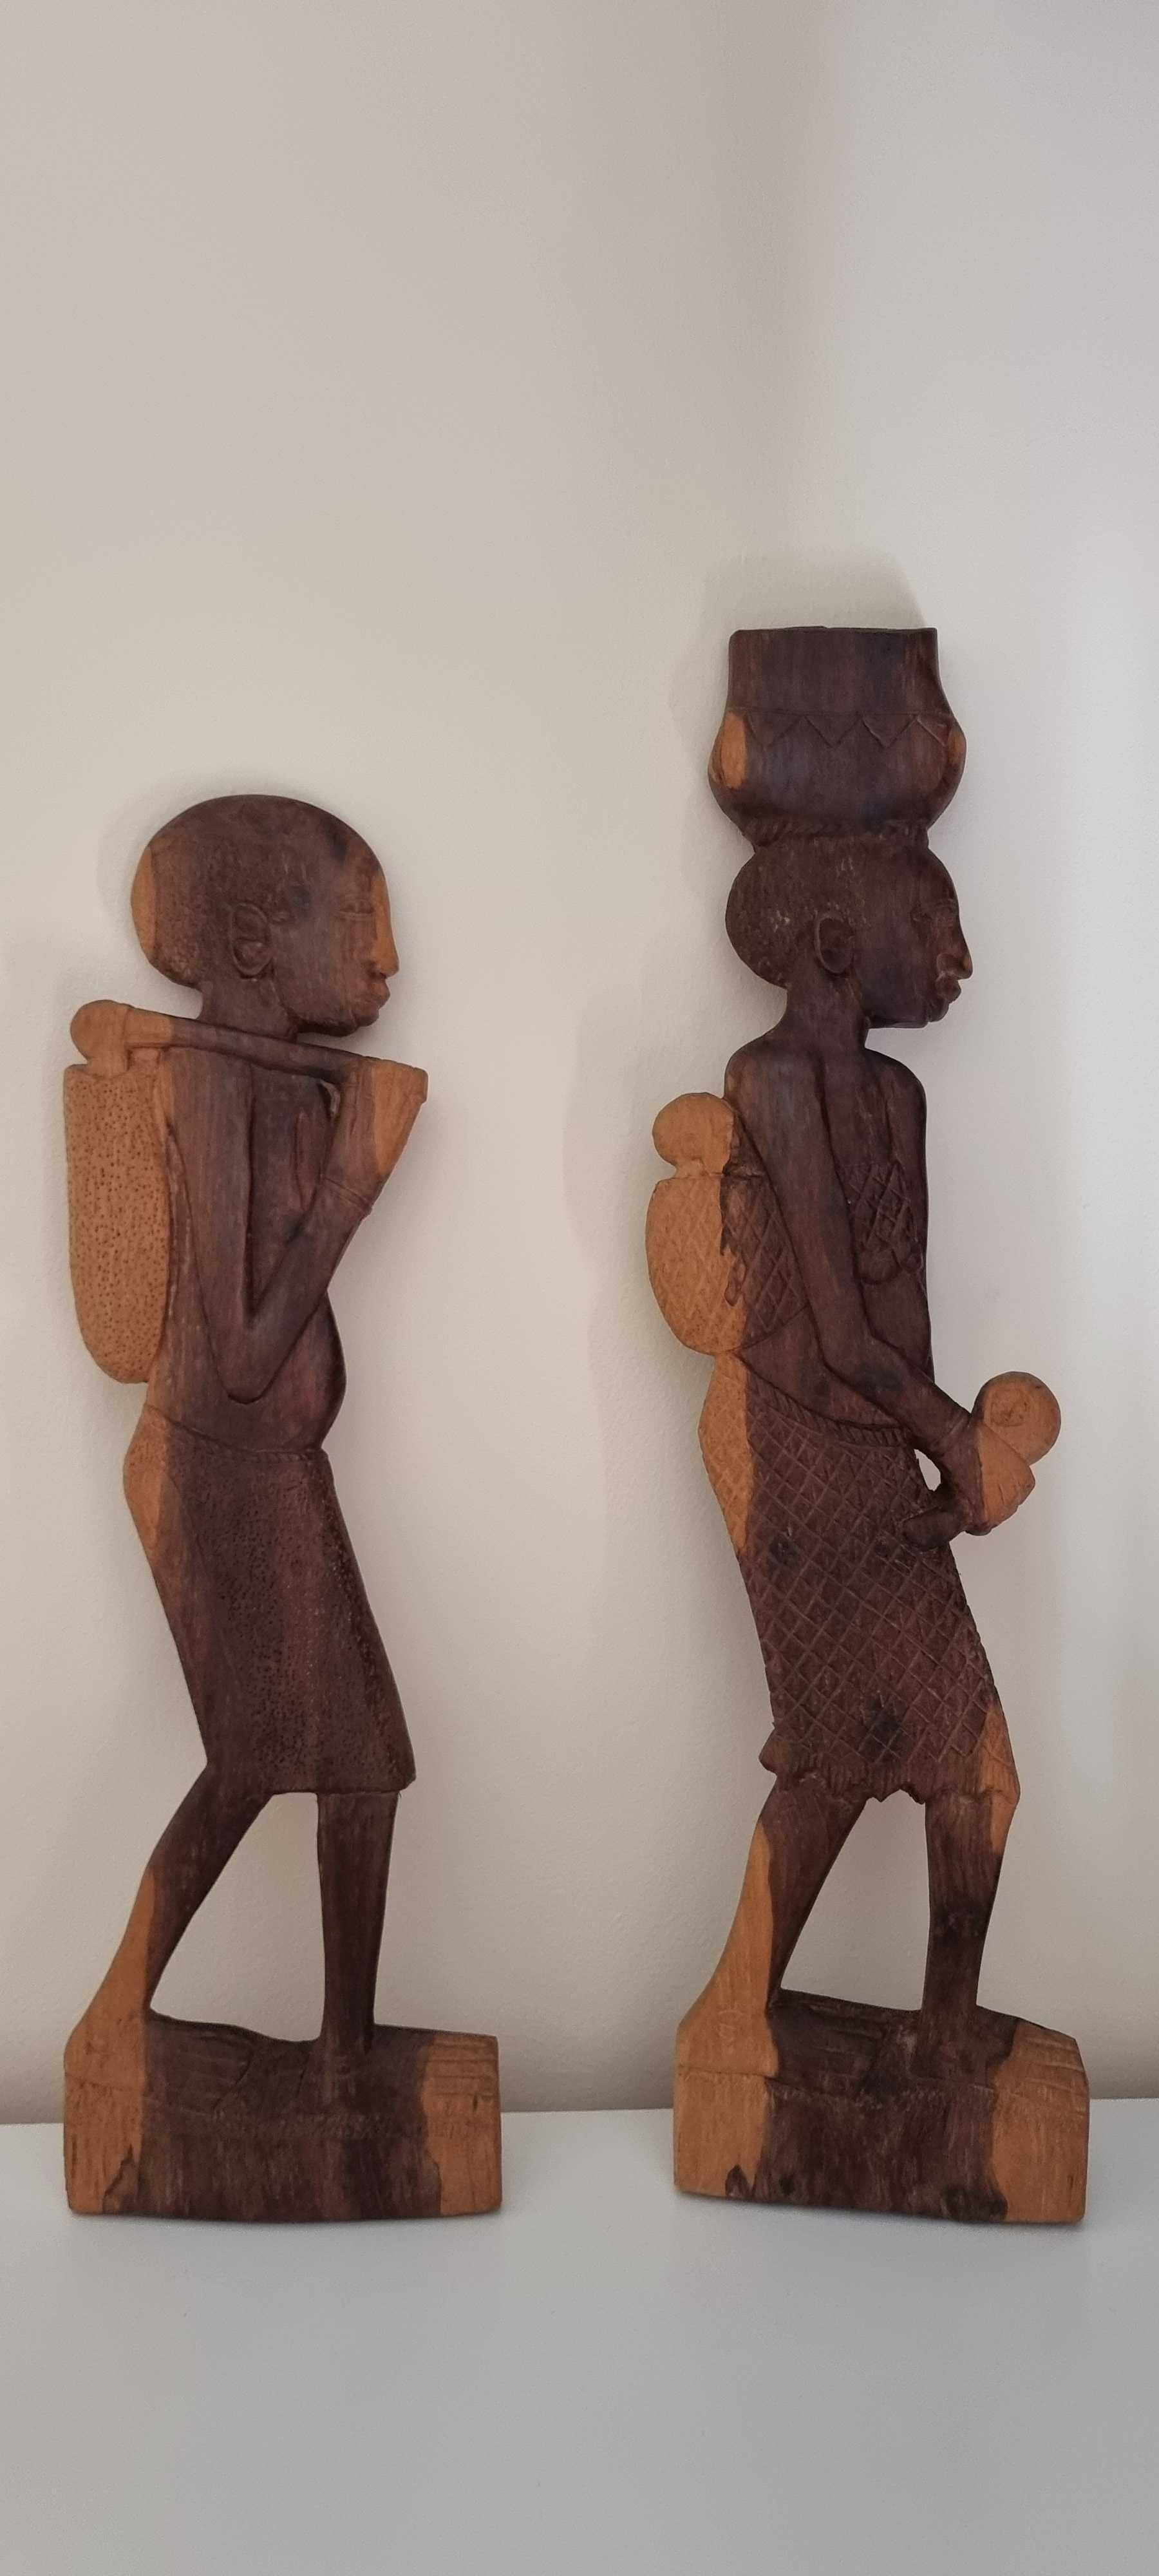 Esculturas, Estatuetas Representativas da Arte Africana